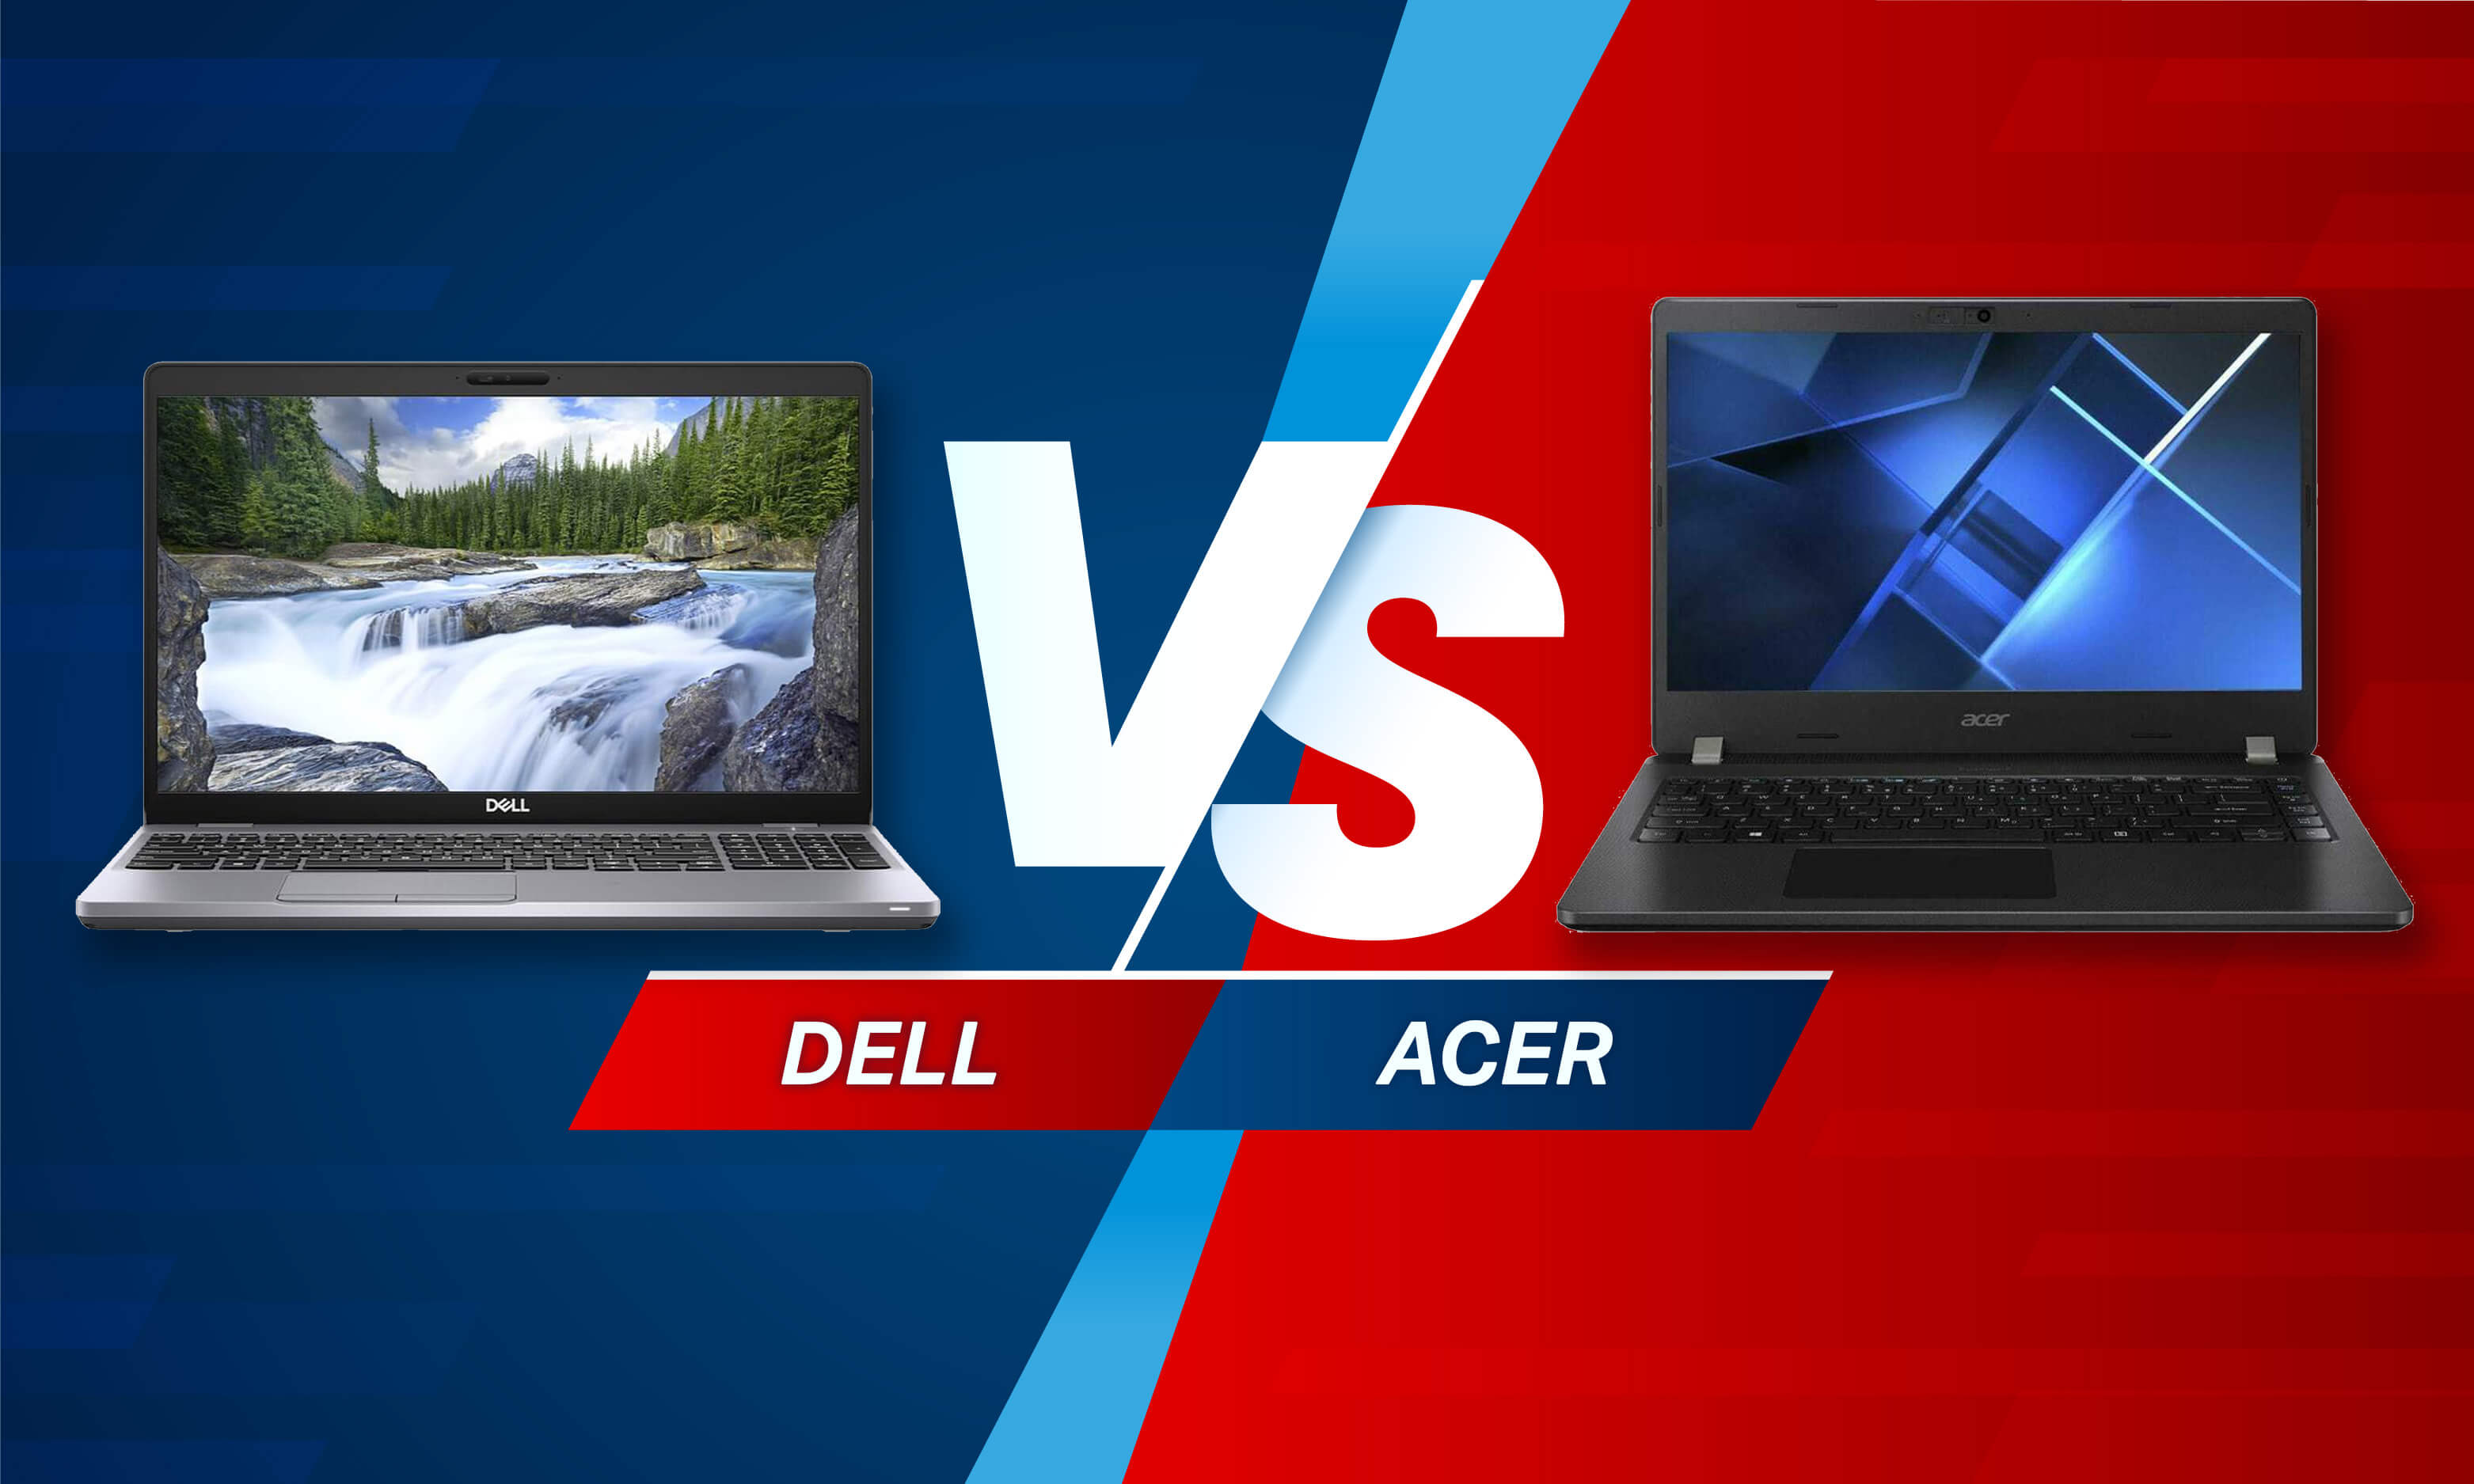 Dell vs Acer Laptops